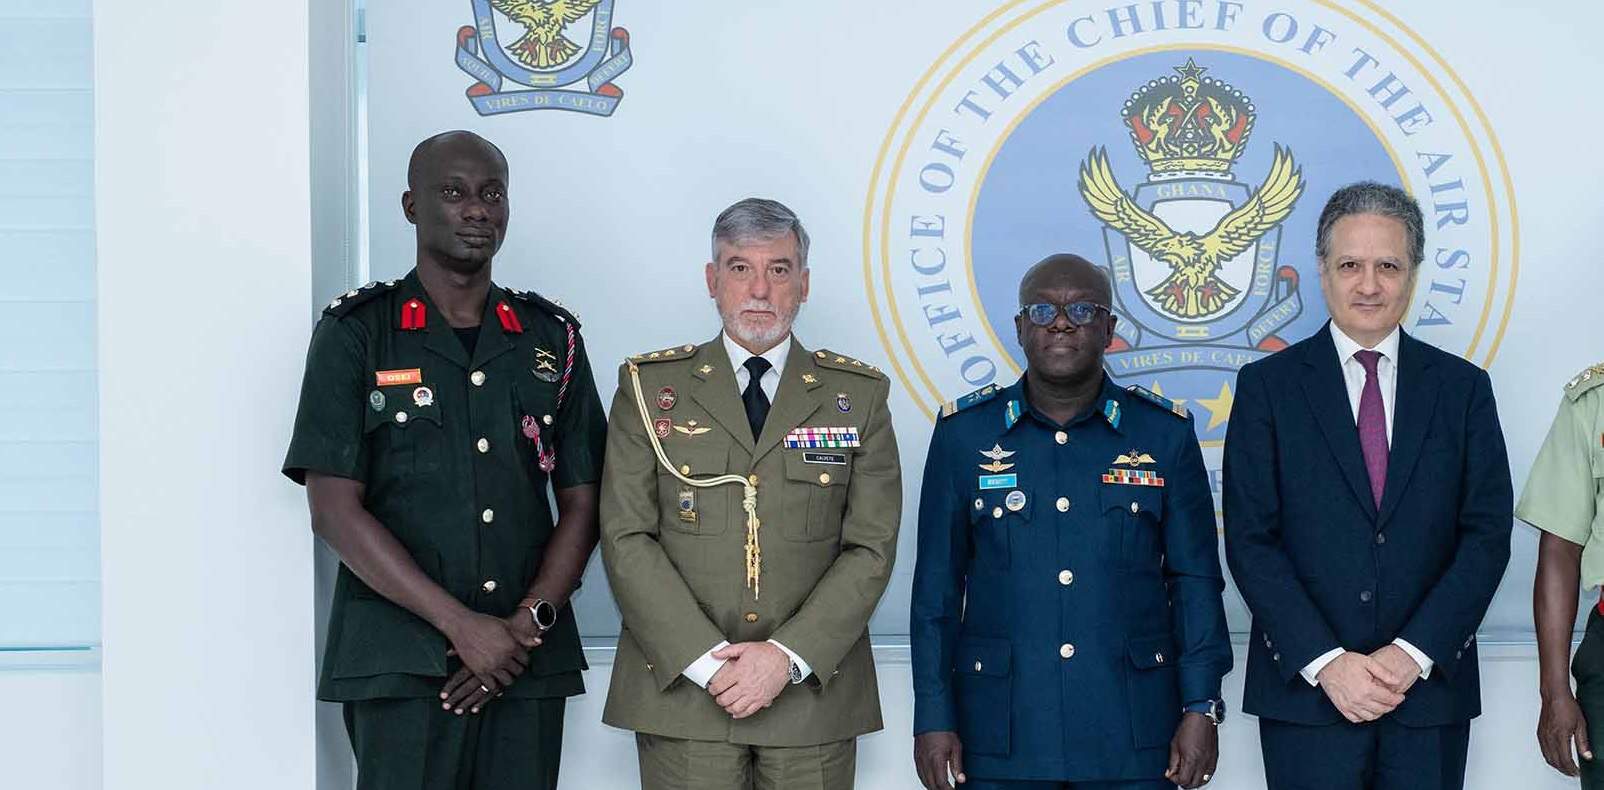 El agregado militar itinerante: entre Madrid, Lituania y Ghana